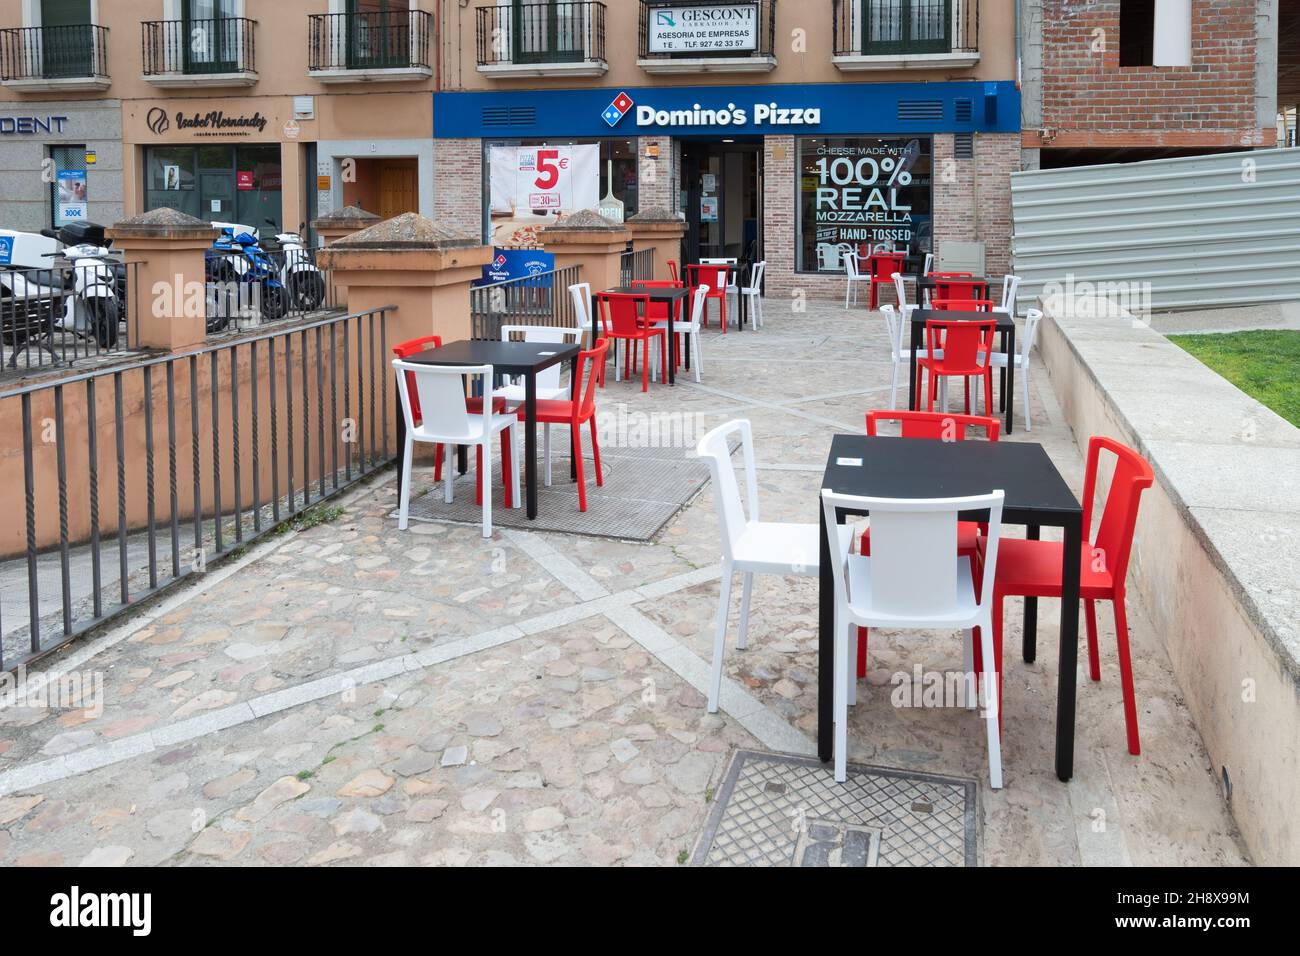 PLASENCIA, ESPAGNE - 29 avril 2021: Plasencia, Espagne - 29 avril 2021:  Terrasse de la célèbre chaîne de pizzas Domino's Pizza avec des offres de  pizzas bon marché adver Photo Stock - Alamy